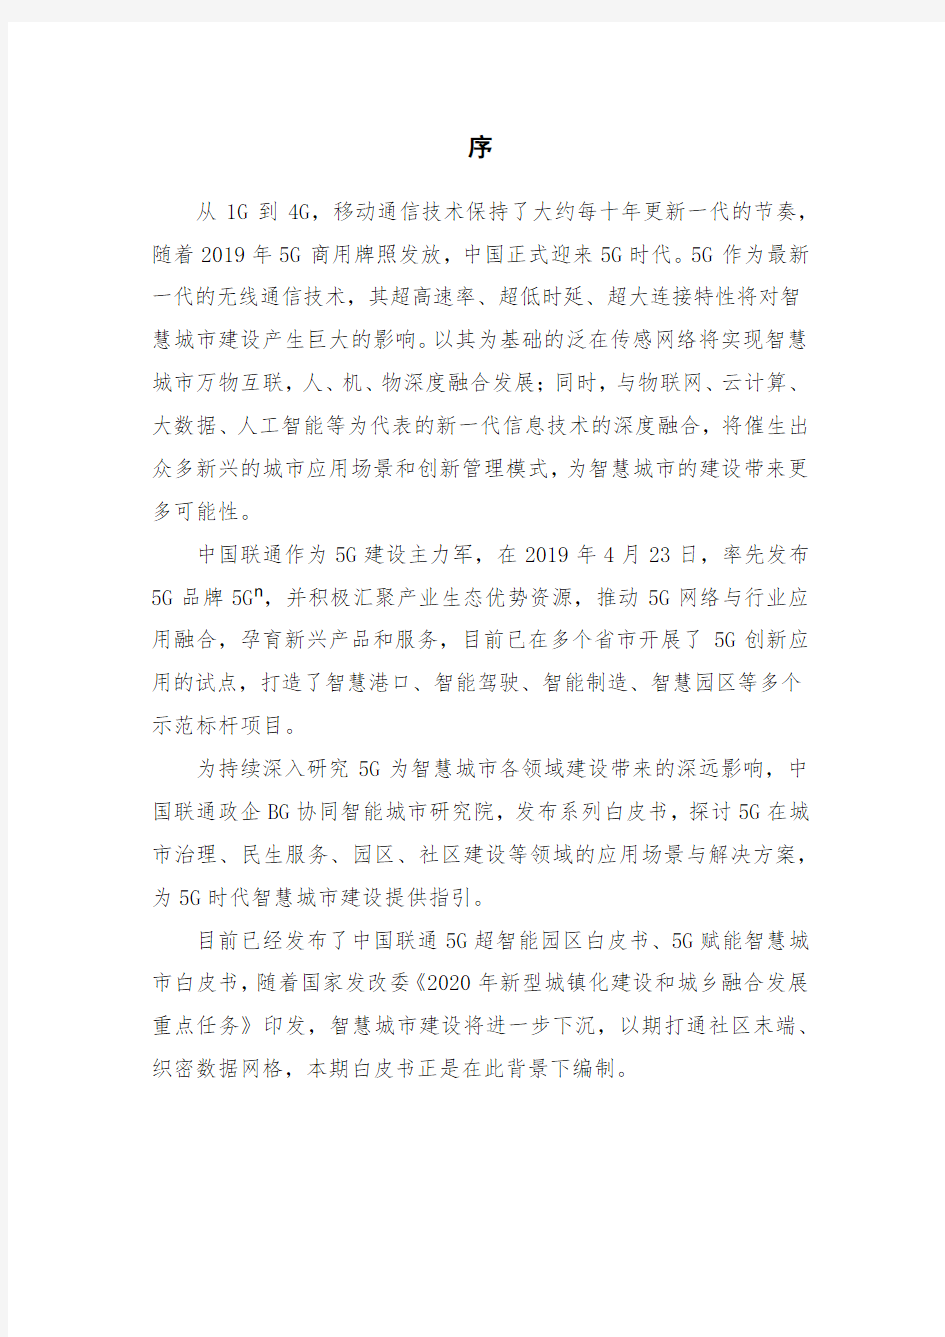 2020年中国联通5G未来社区白皮书